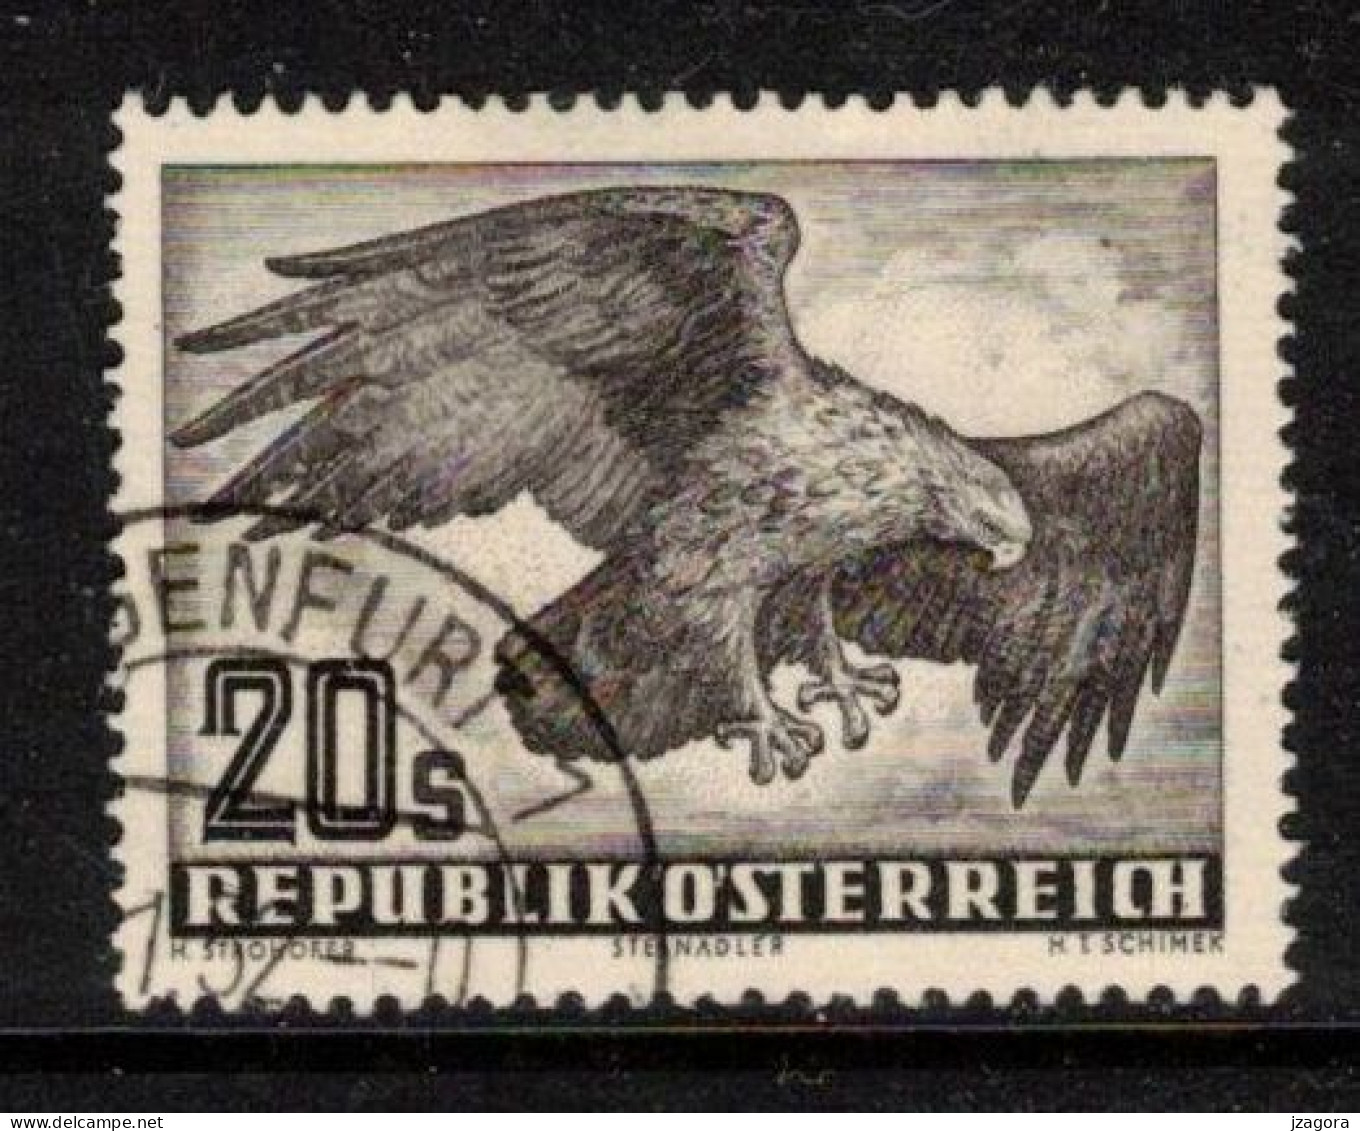 BIRDS EAGLE VÖGEL ADLER OISEAUX AIGLE AUSTRIA ÖSTERREICH AUTRICHE 1952 MI 968 ANK 973 YT PA60 SC C60  Air Mail Flugpost - Usados